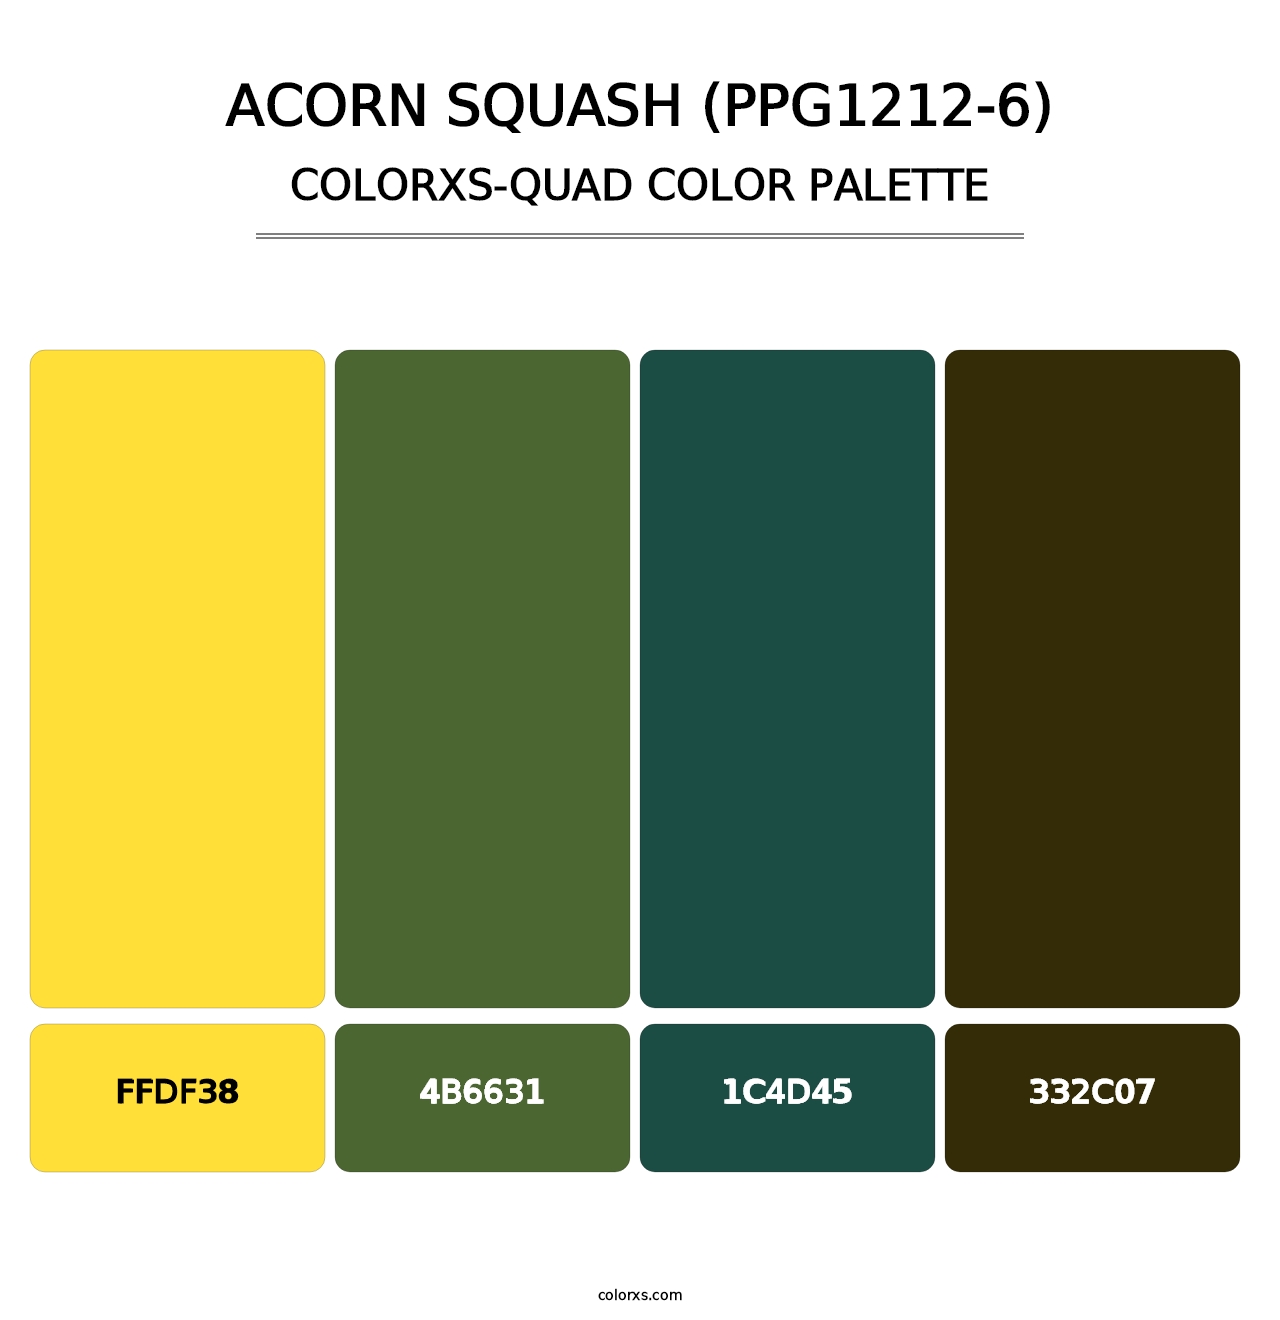 Acorn Squash (PPG1212-6) - Colorxs Quad Palette